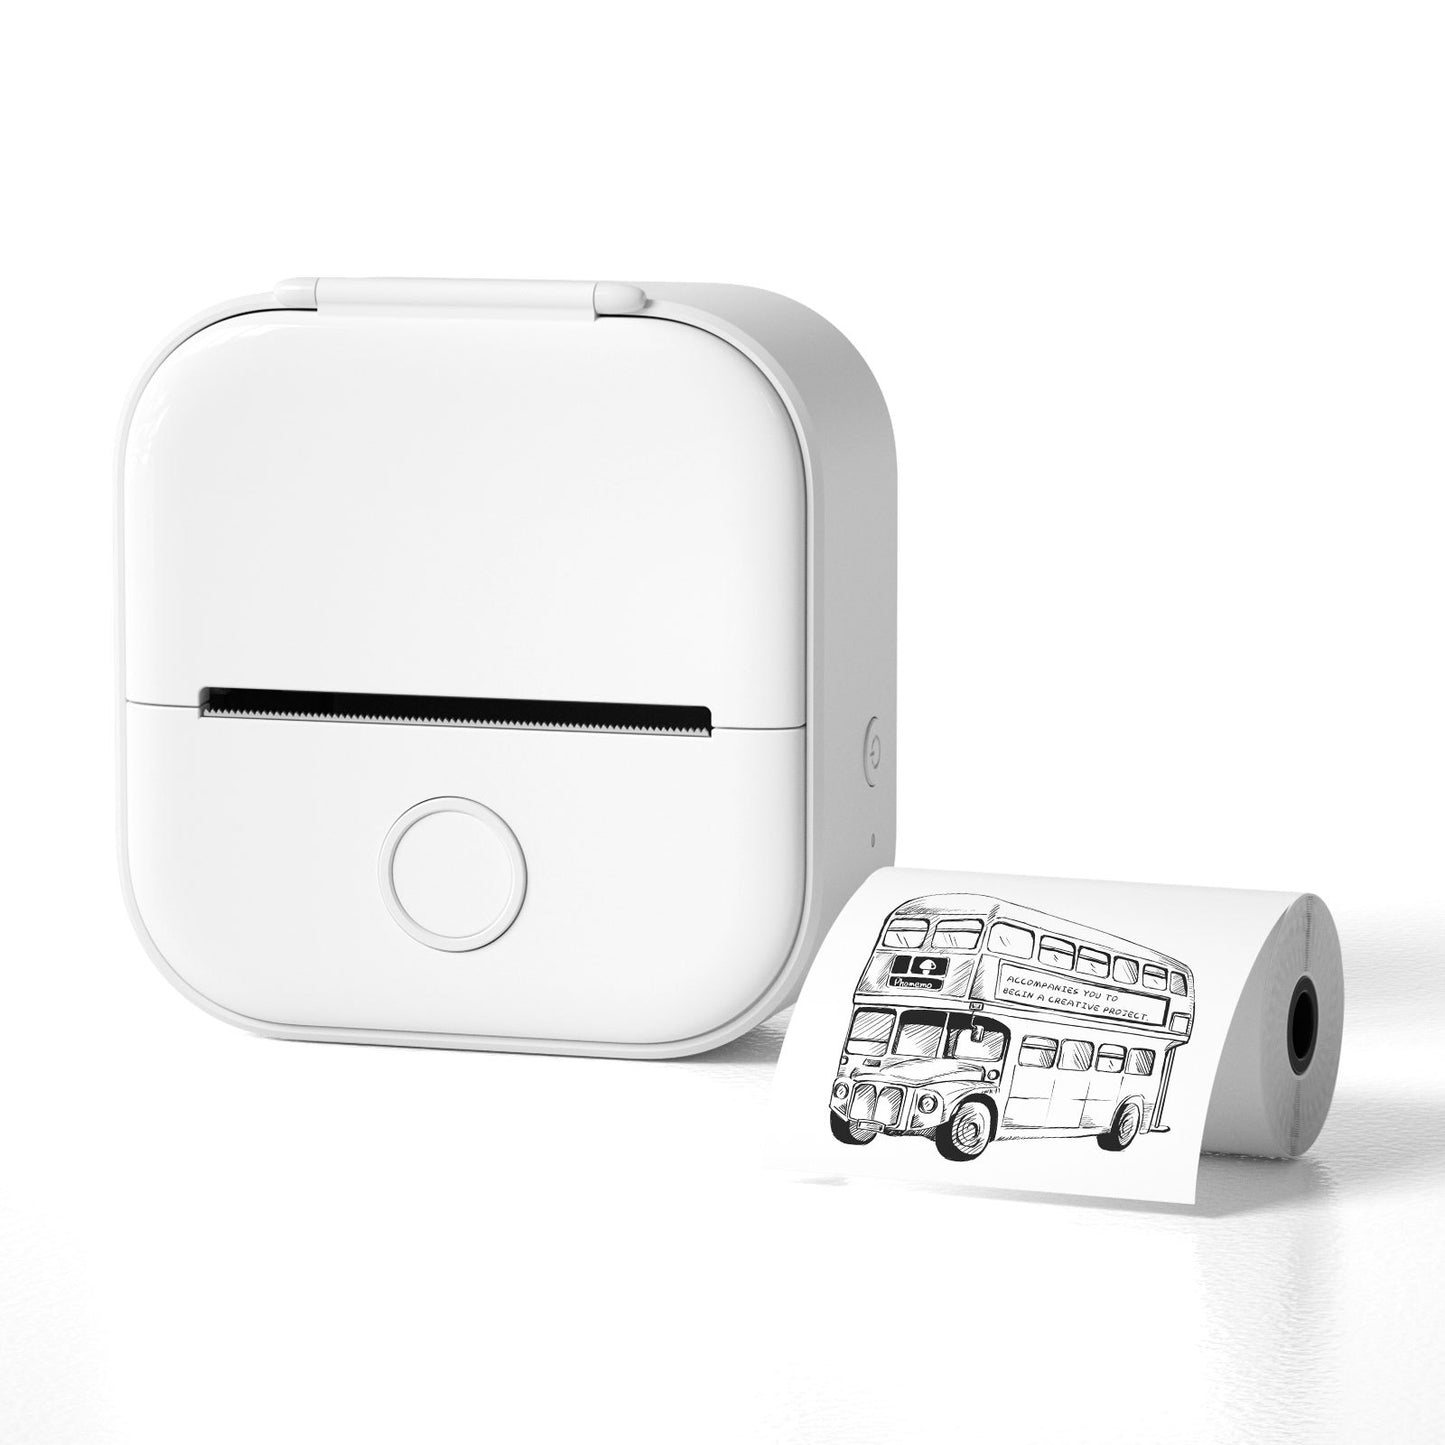 Mini Sticker Printer - T02 Small Thermal Printer for Phone, Portable Wireless Printer